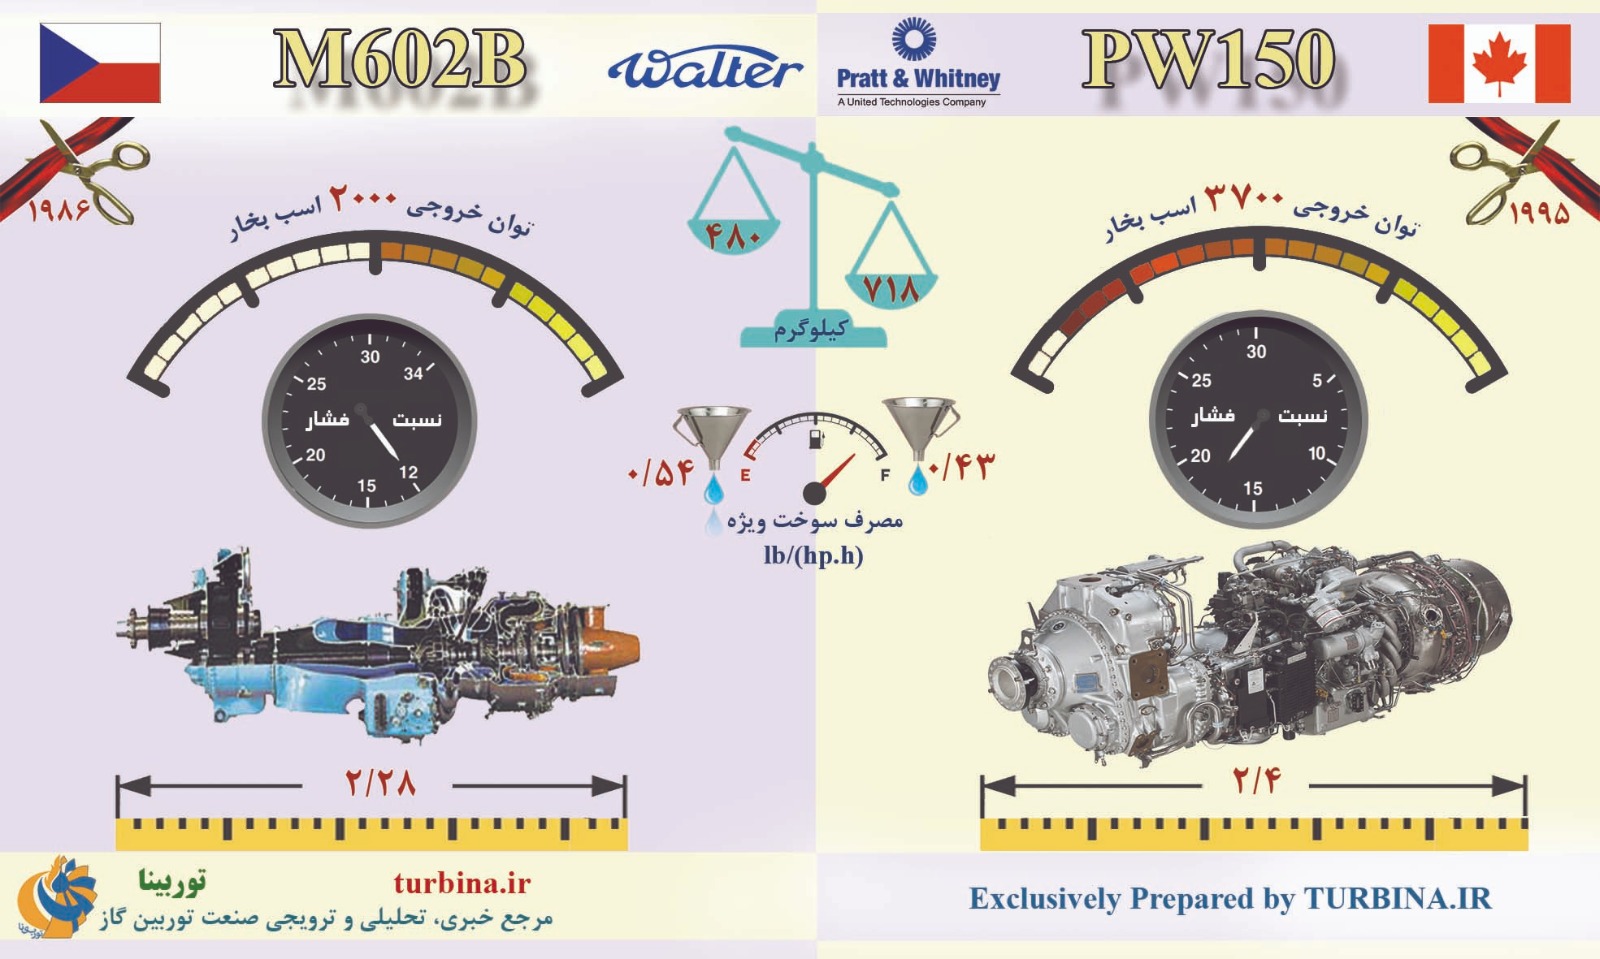 مقایسه موتورهای M602B و PW150